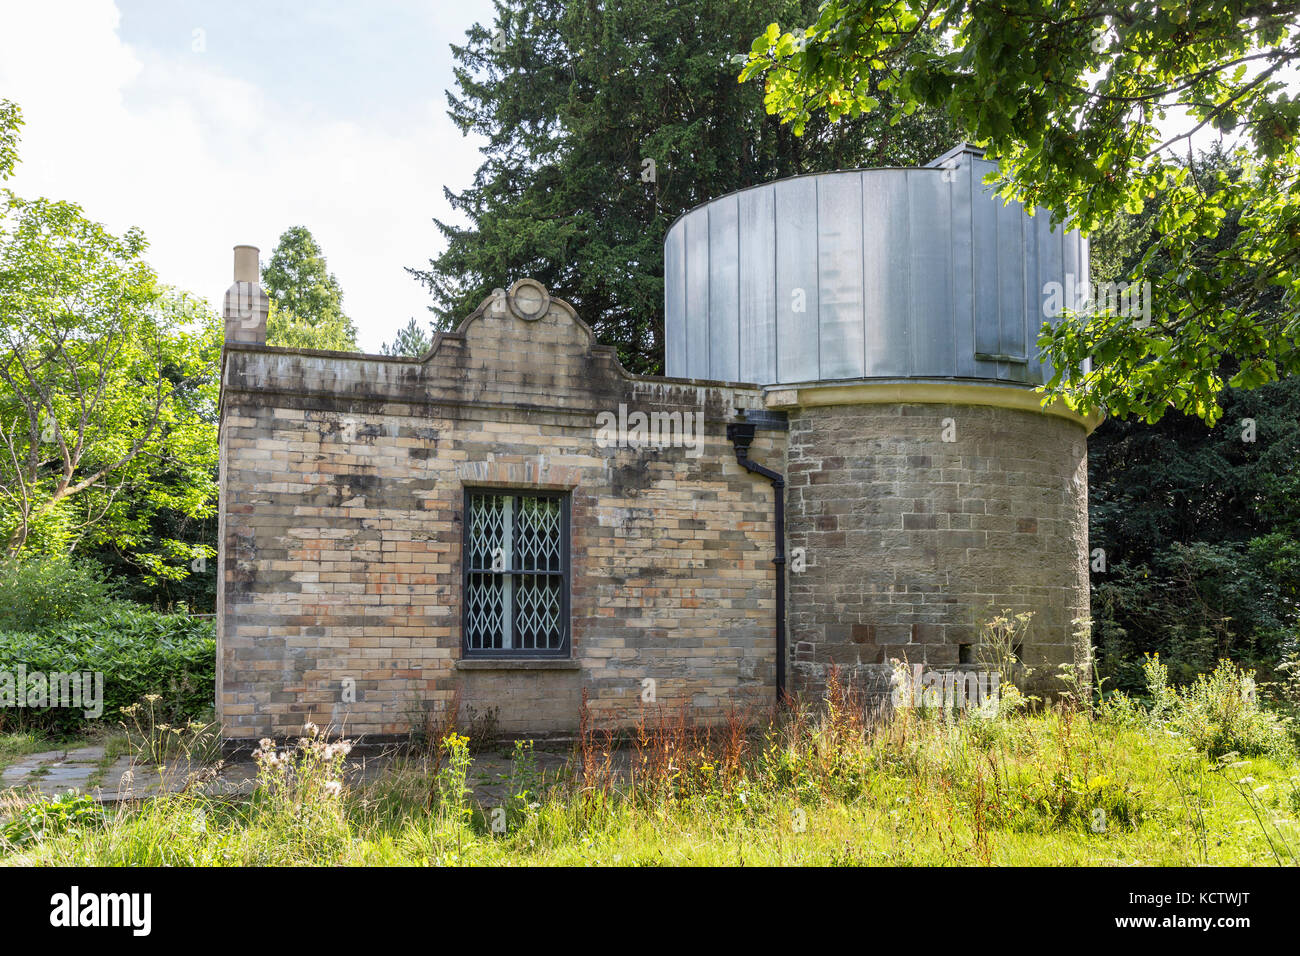 John Dillwyn Llewellyn's observatory at Penllergare, Swansea, Wales, UK Stock Photo